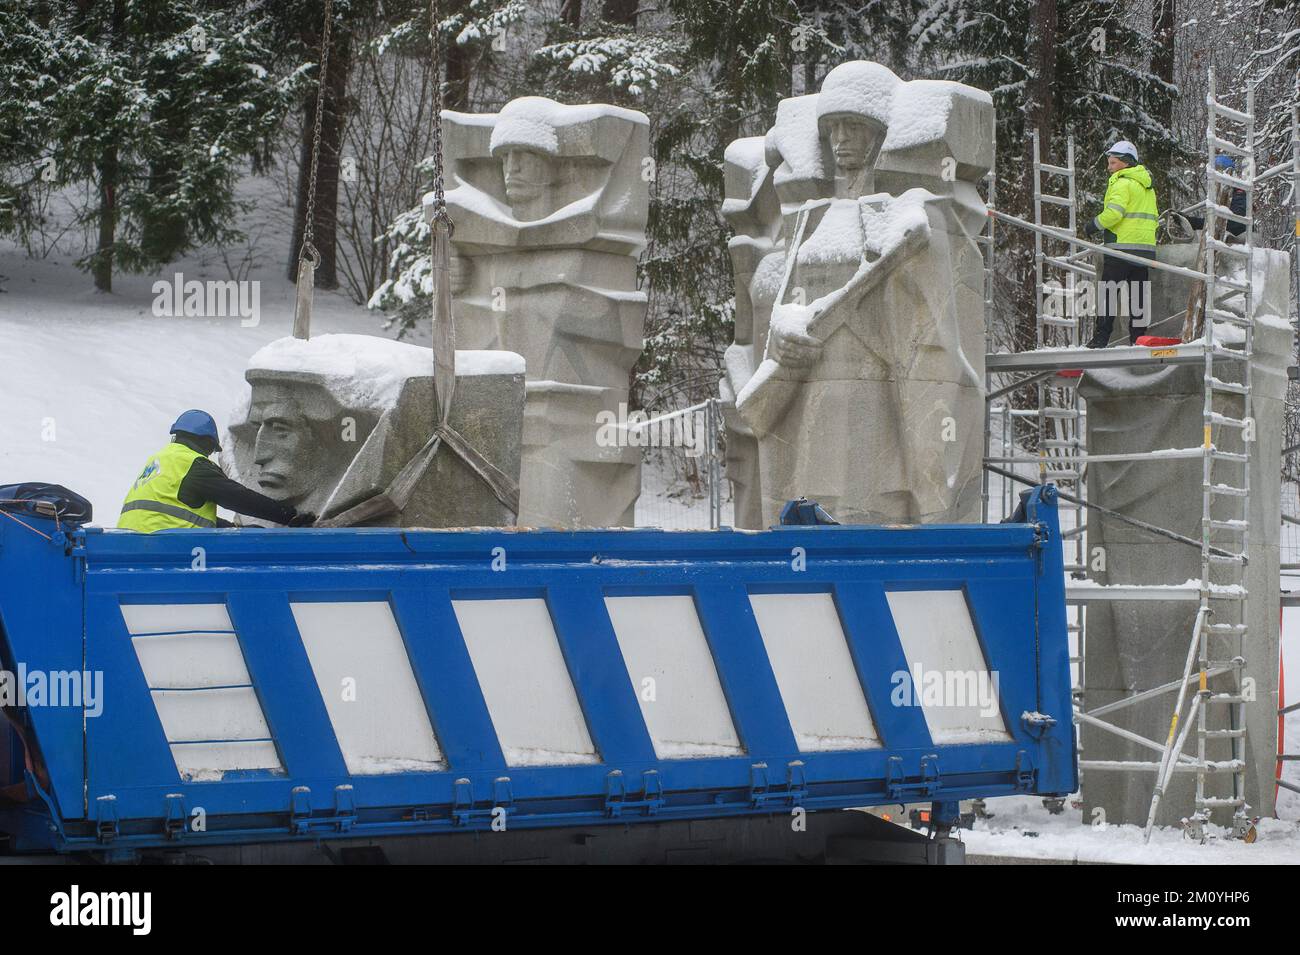 Des ouvriers démantelent le monument des soldats de l'Armée rouge soviétique au cimetière d'Antakalnis à Vilnius. Le mémorial, construit en 1984, a été dédié aux soldats de l'Armée rouge qui sont morts pendant la libération de Vilnius des envahisseurs nazis pendant la Seconde Guerre mondiale. Sur 6 décembre 2022, le démantèlement du monument a commencé malgré des mesures provisoires, qui ont été imposées par le Comité des droits de l'homme des Nations Unies après une pétition signée par quelques «Russes ethniques». L'ambassade de Russie en Lituanie a qualifié la suppression du monument de « moquerie barbare » et a appelé « à évaluer ce mépris démonstratif pour les décisions o Banque D'Images